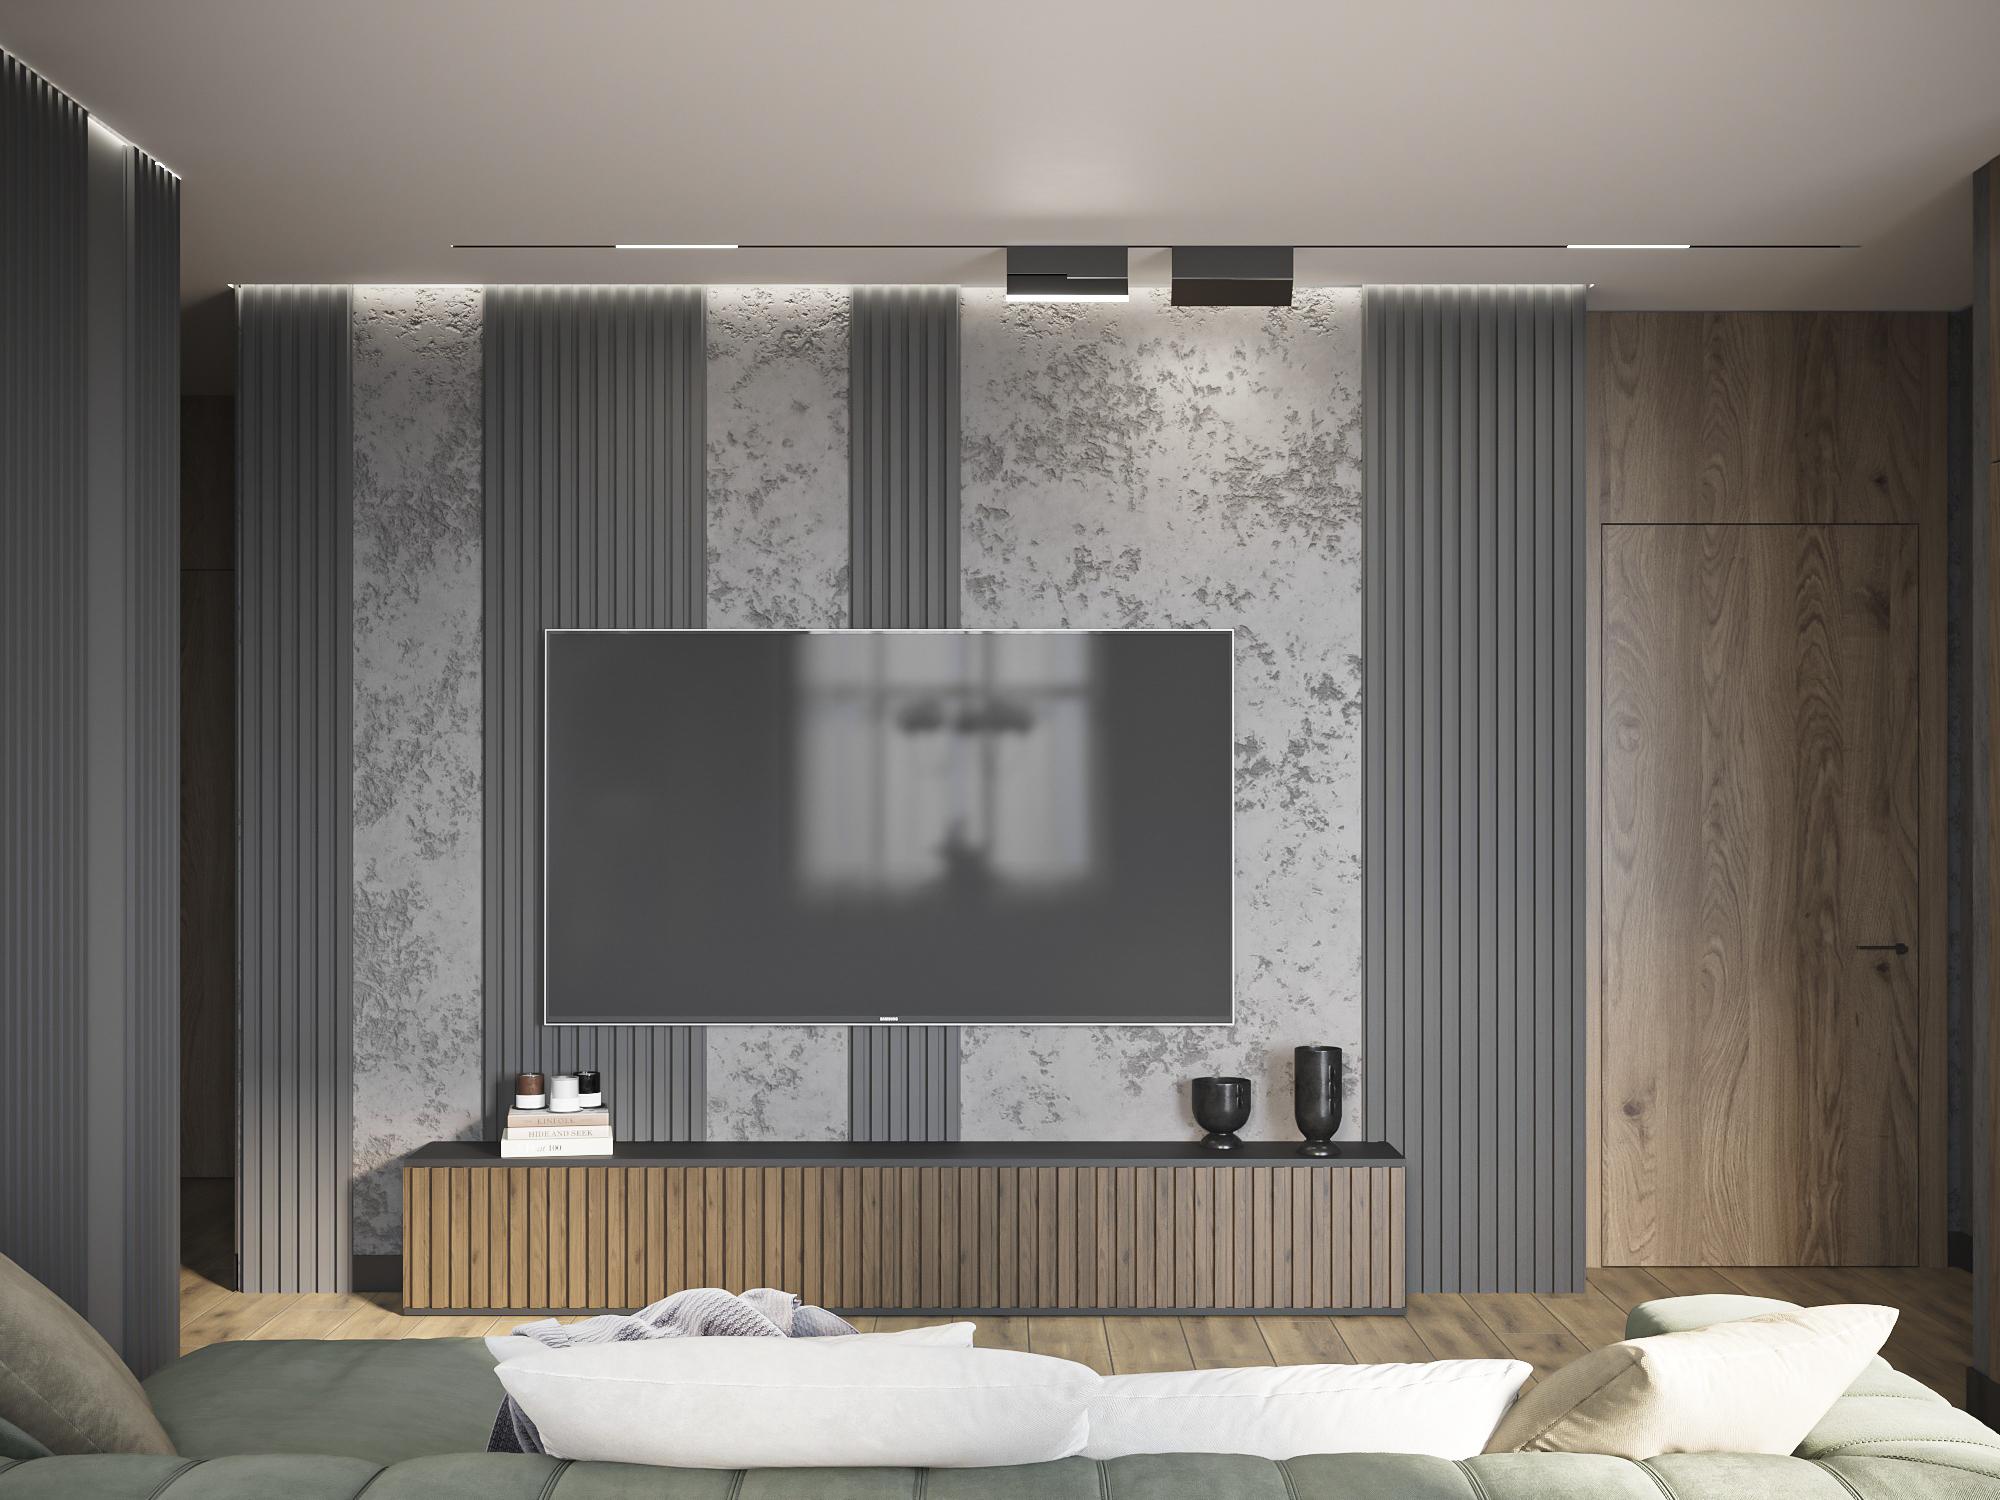 Интерьер гостиной cветовыми линиями, стеной с телевизором, телевизором на рейках, рейками с подсветкой и подсветкой настенной